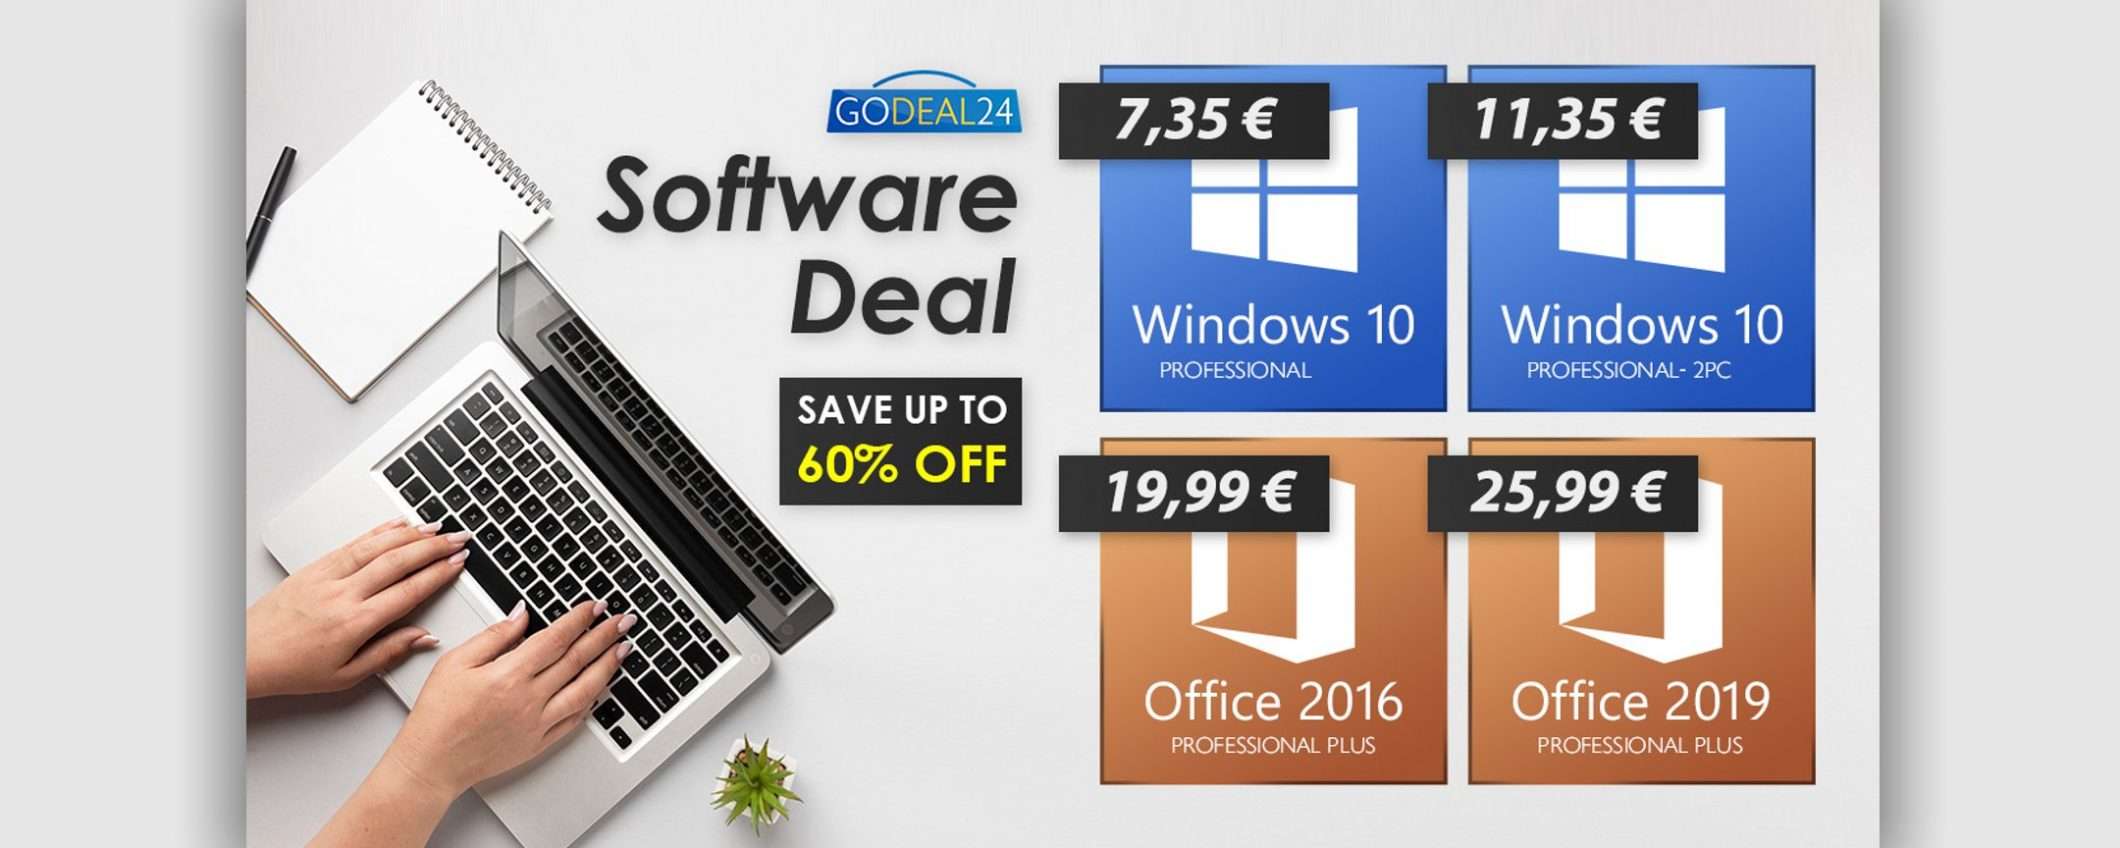 Offerte della settimana: Windows 10 solo 6€, Office 15€